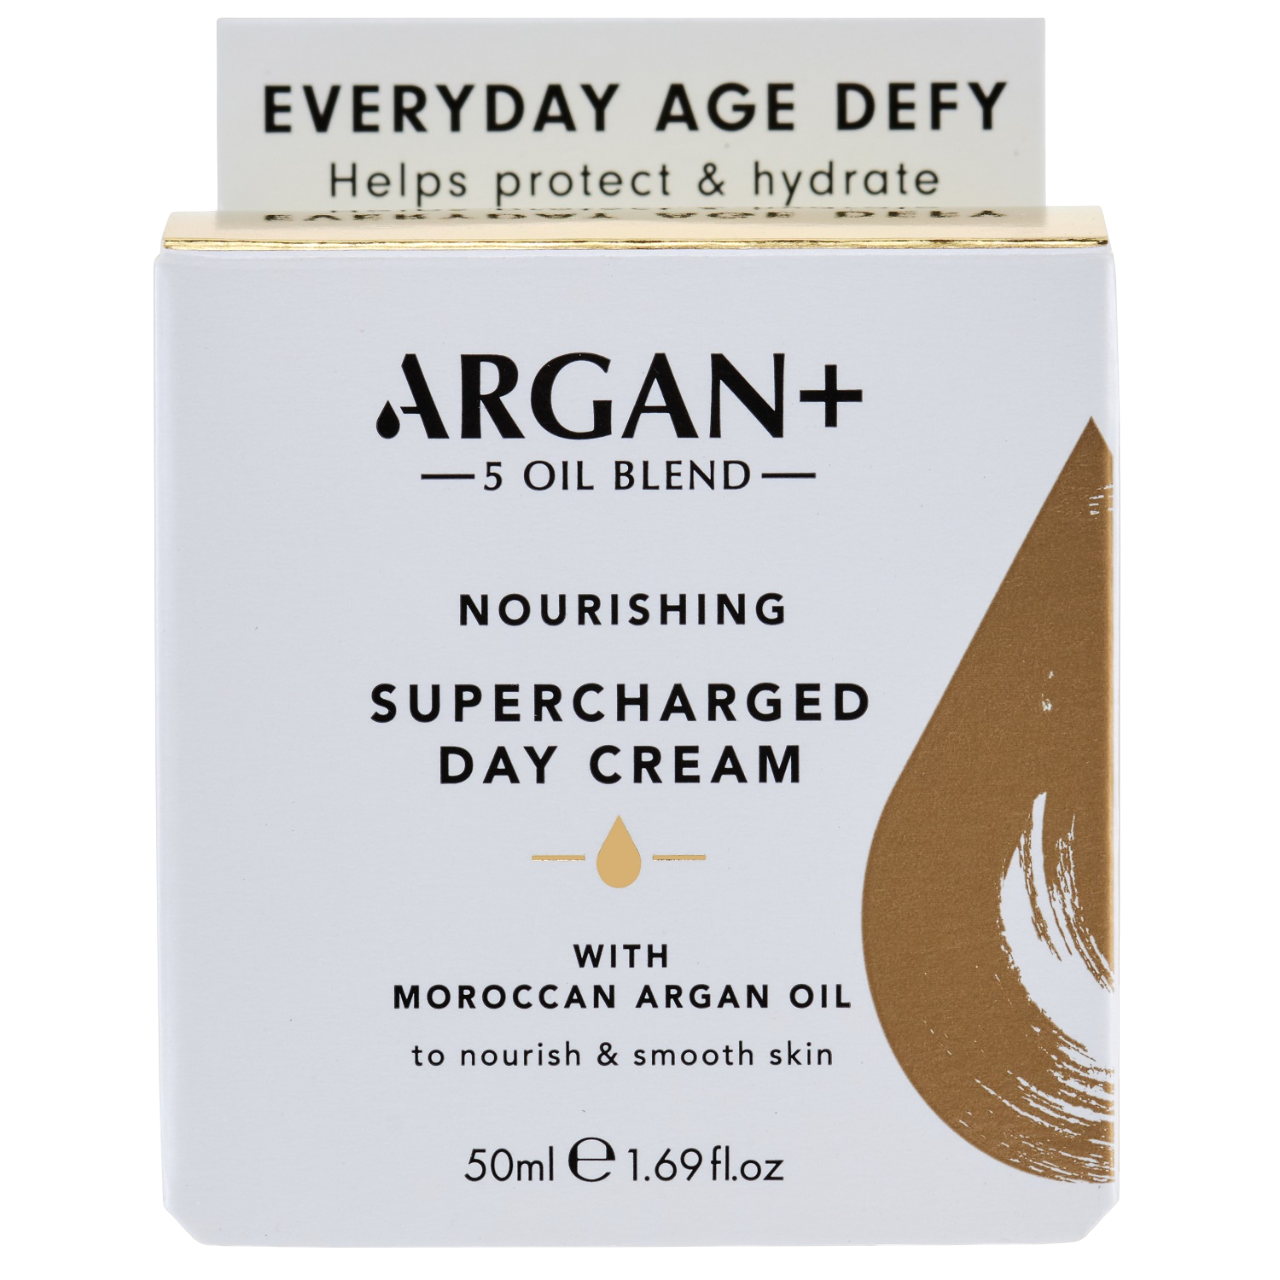 Крем для обличчя денний Argan+ Moroccan Argan Oil Super Charged, 50 мл - фото 2